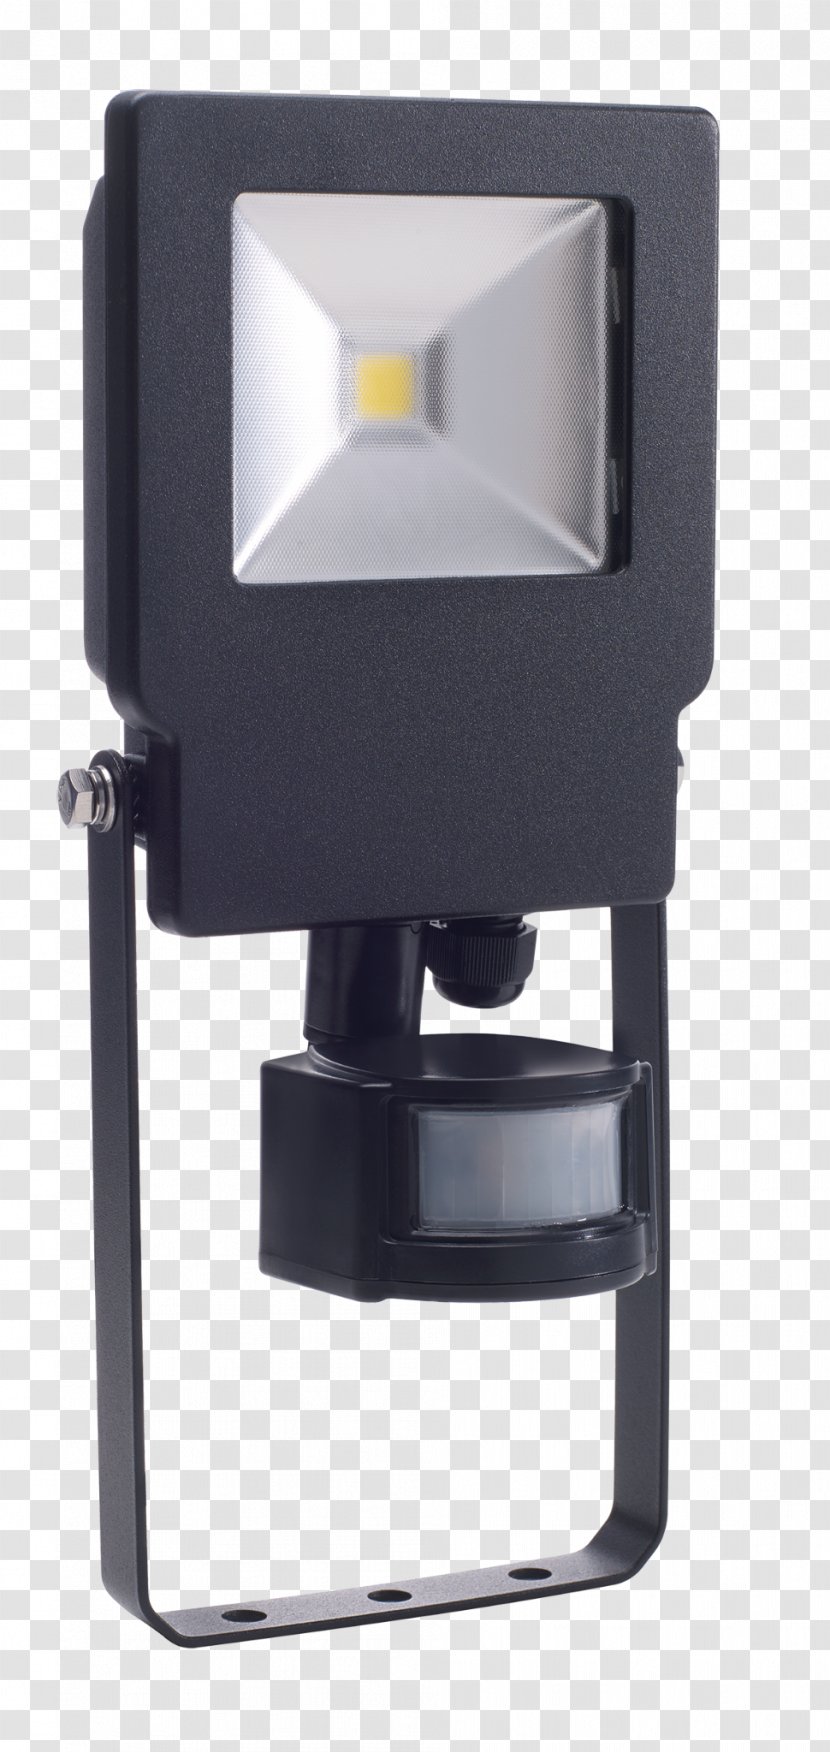 Floodlight Lighting Light-emitting Diode Timeguard Ltd - Hardware - Electricity Supplier Promotion Transparent PNG